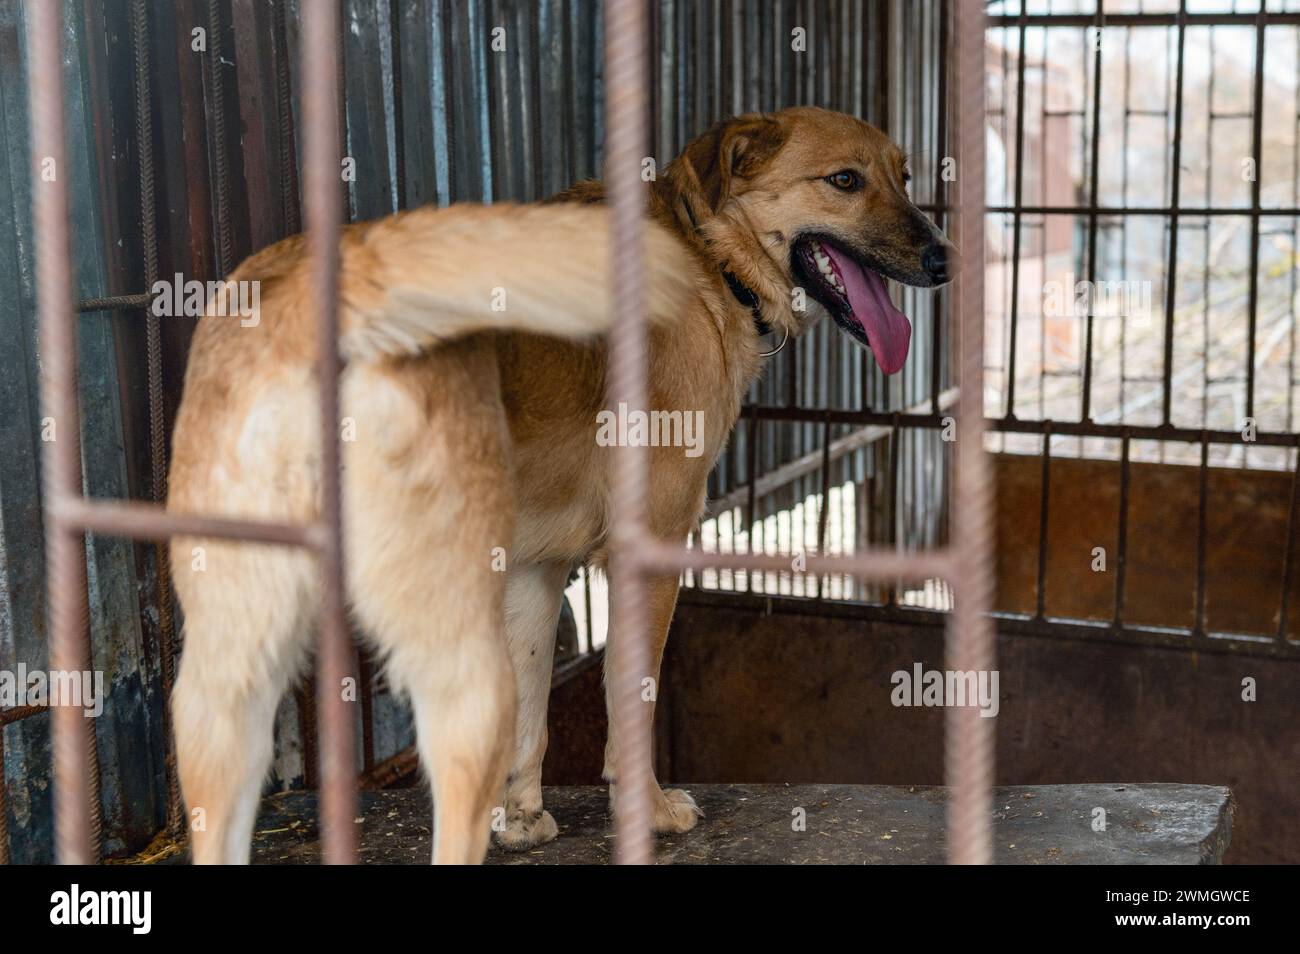 Perro en refugio de animales esperando la adopción. Perro detrás de las vallas. Canino tras las rejas. Los perros miran a través de una valla de metal Foto de stock